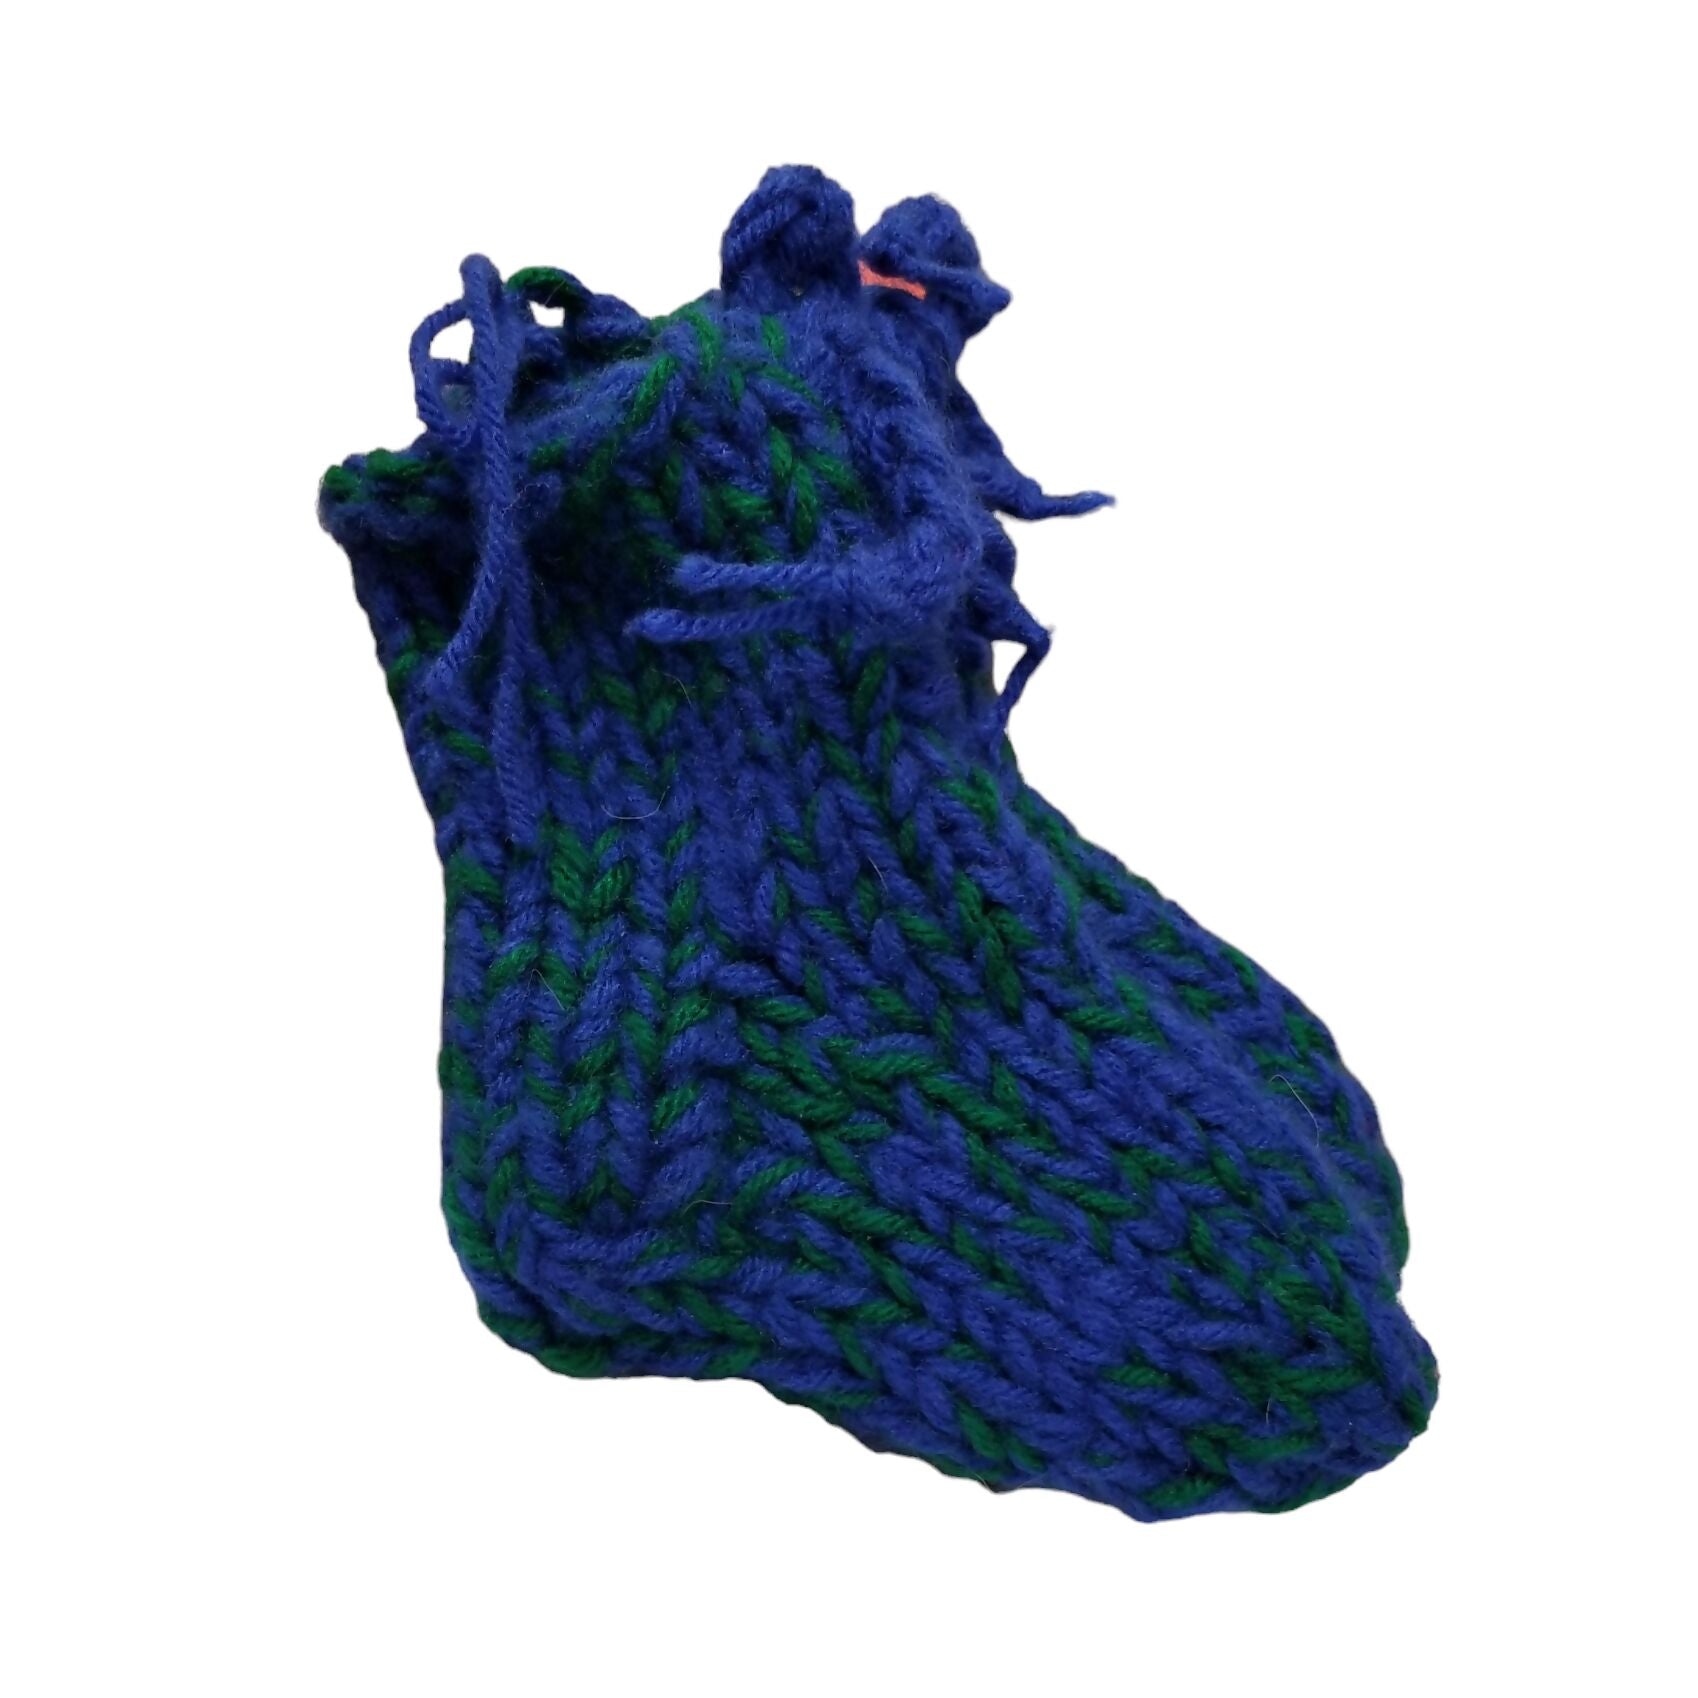 Blue & Green Knit Socks